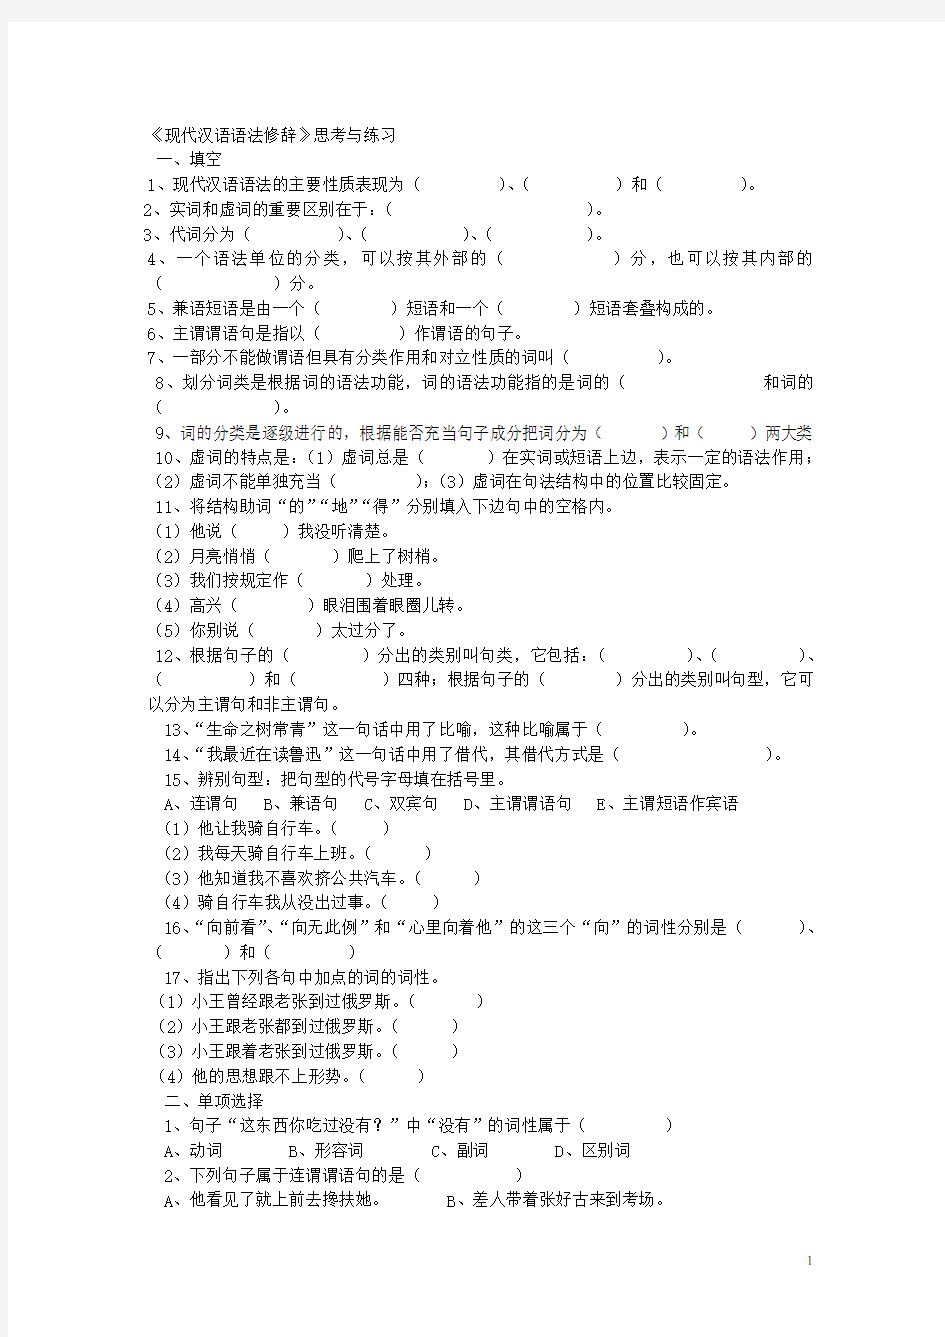 《现代汉语语法修辞》 综合试卷有全部答案